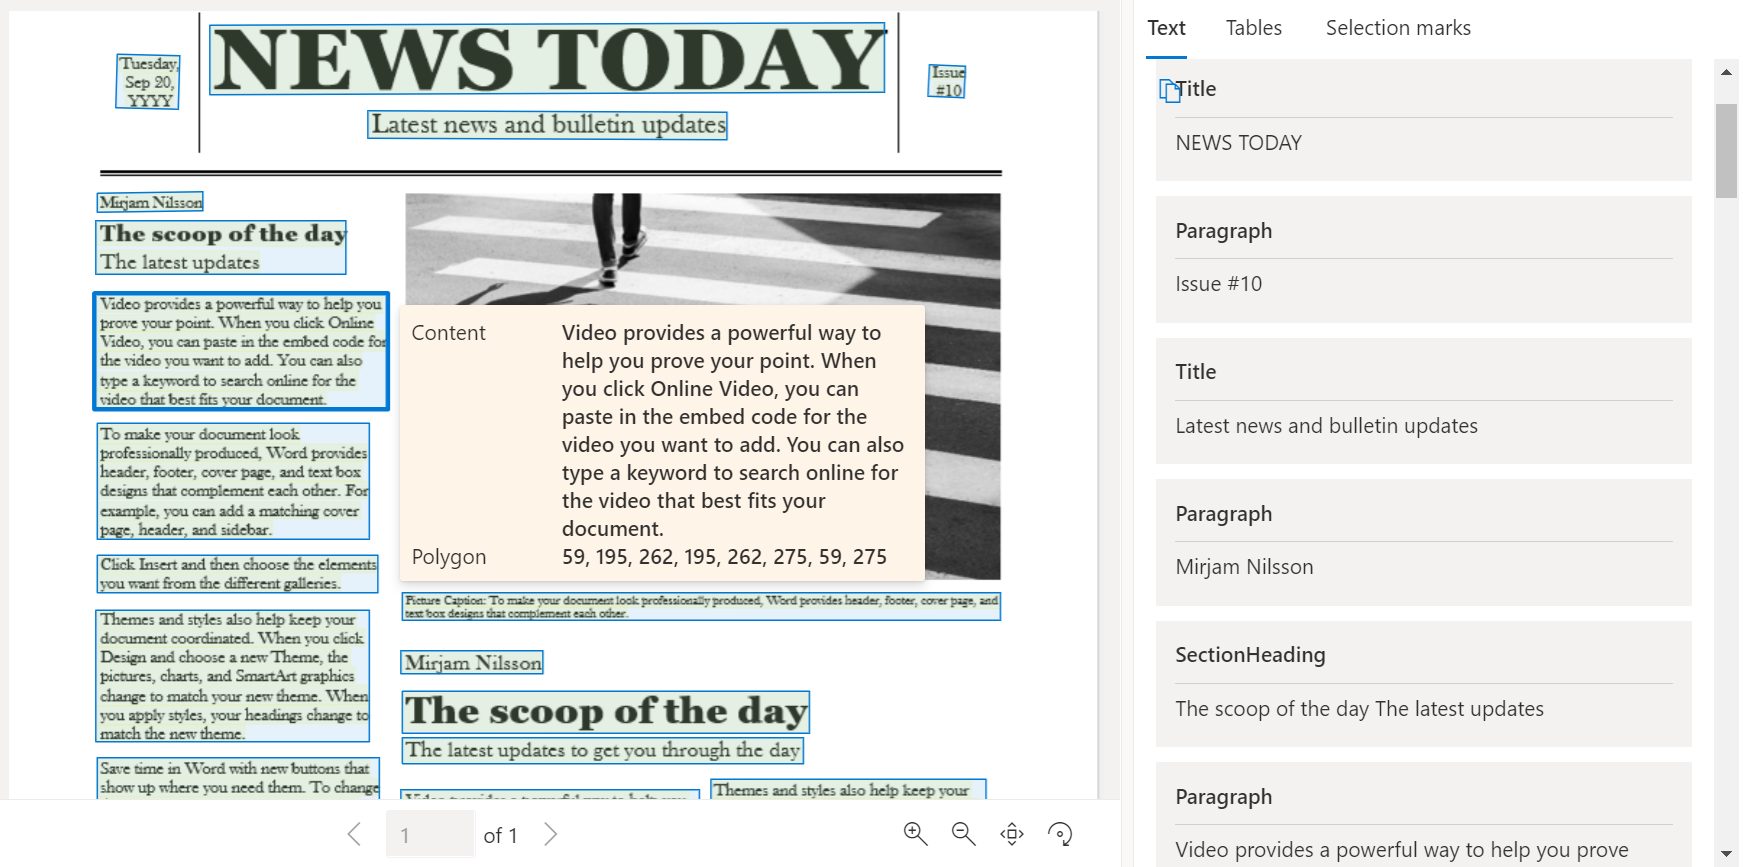 Captura de tela da página de jornal de exemplo processada usando o Document Intelligence Studio.